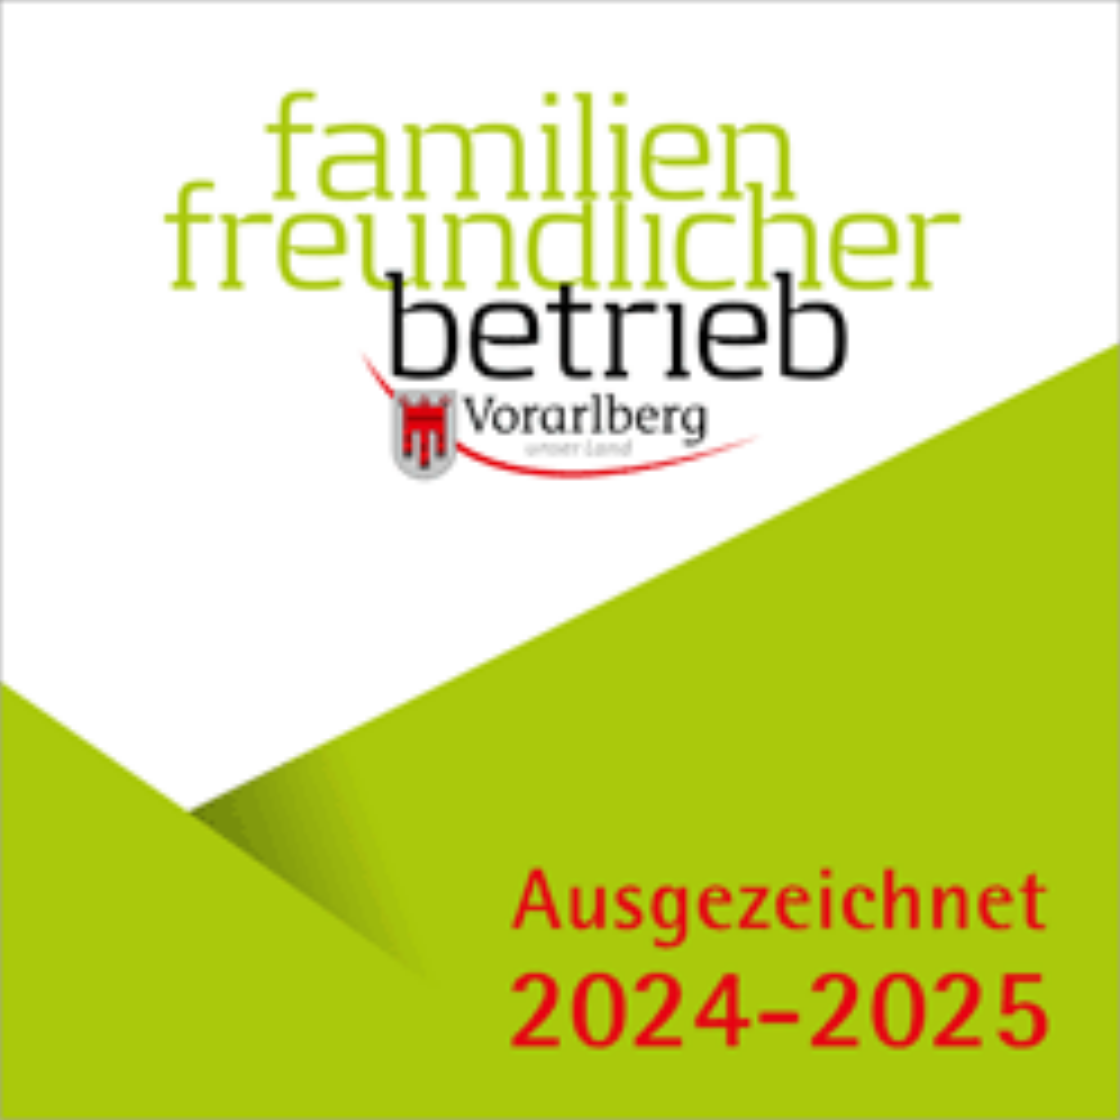 Gütesiegel Familienfreundlicher Betrieb 2020-2021